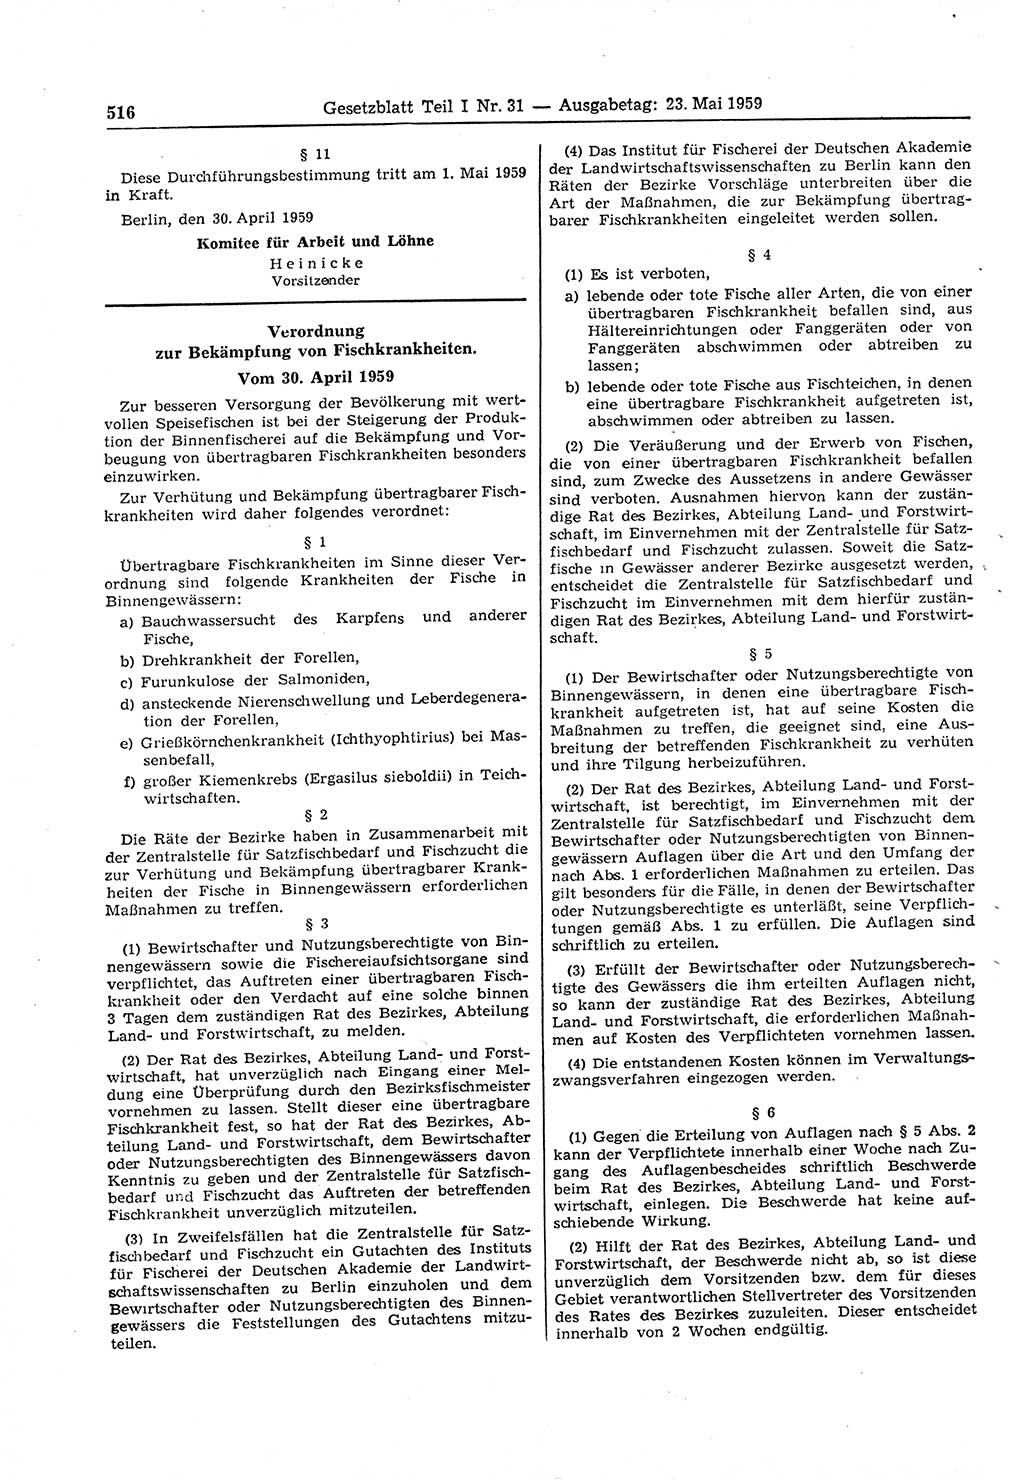 Gesetzblatt (GBl.) der Deutschen Demokratischen Republik (DDR) Teil Ⅰ 1959, Seite 516 (GBl. DDR Ⅰ 1959, S. 516)